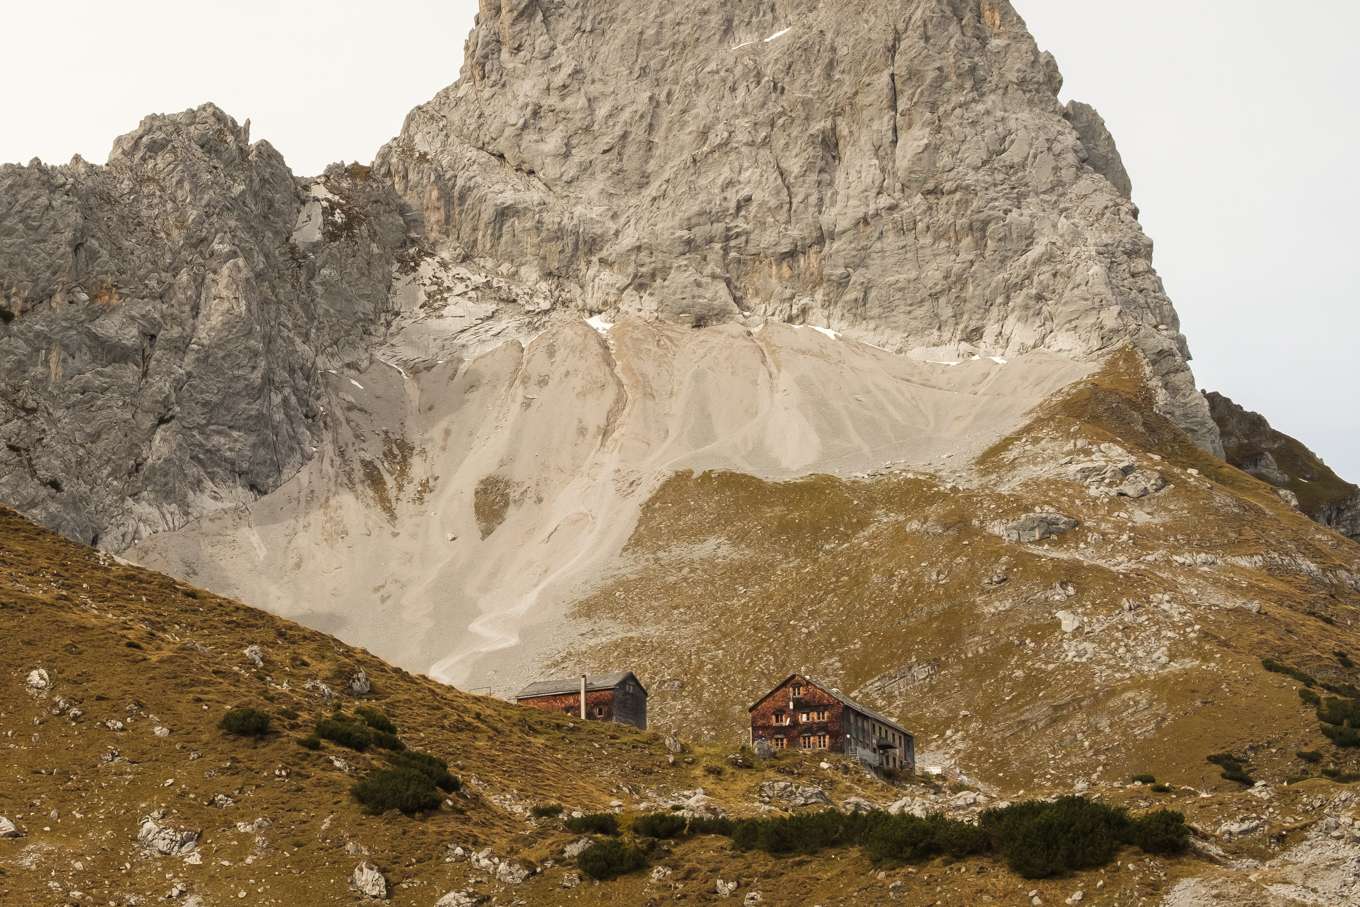 A closer shot of Lamsenjochhütte, a large wooden mountain hut